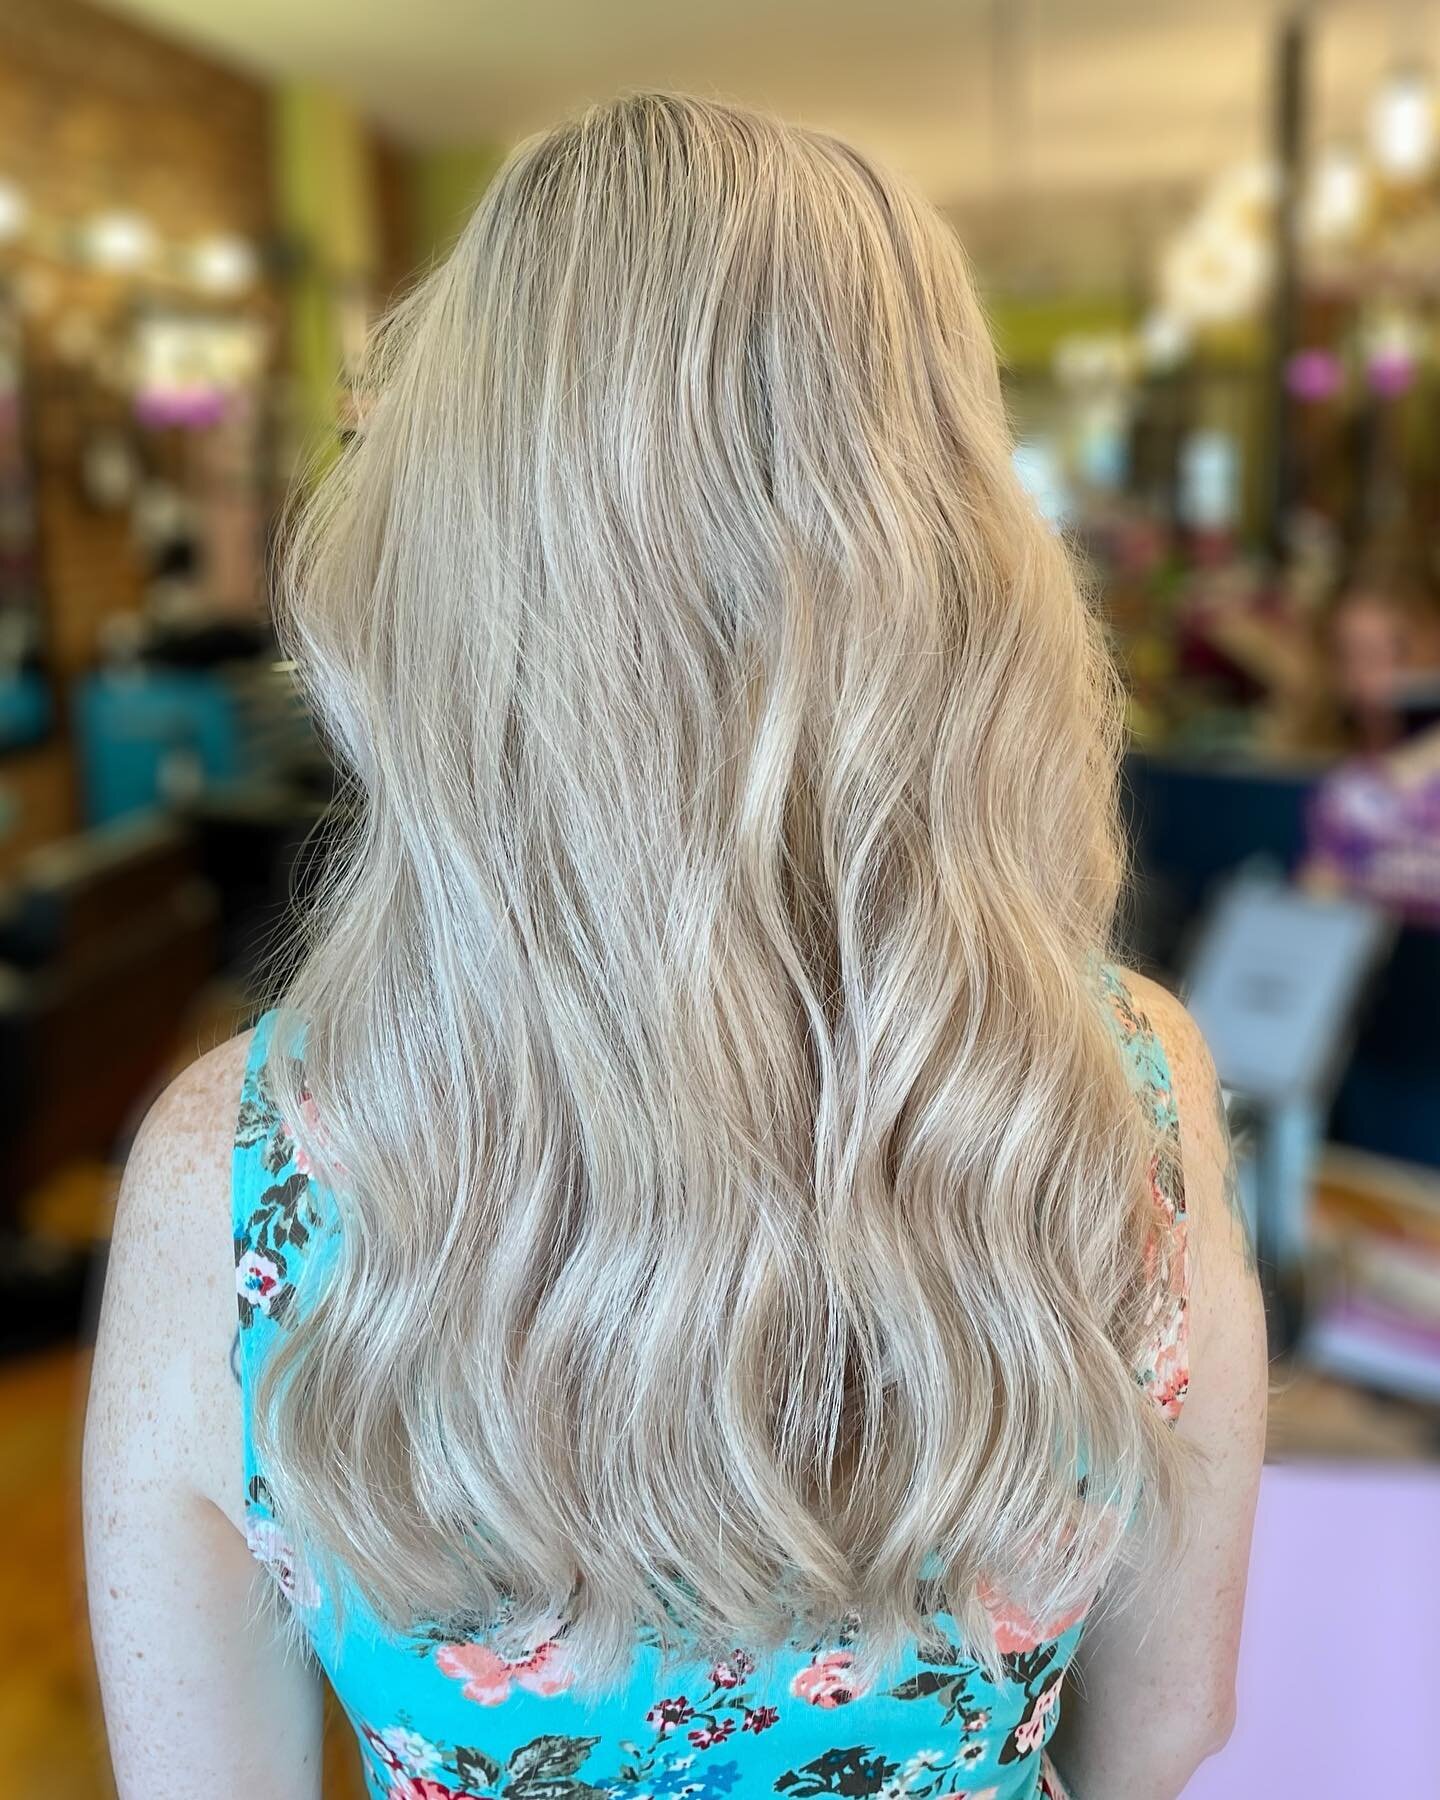 Same hair, different lighting, #nofilter 😍

#hairstylist #lexingtonky #lexingtonhairstylist #lexingtonhair #lexingtonhairdresser #sharethelex #wella #blonde #lexingtonblonde